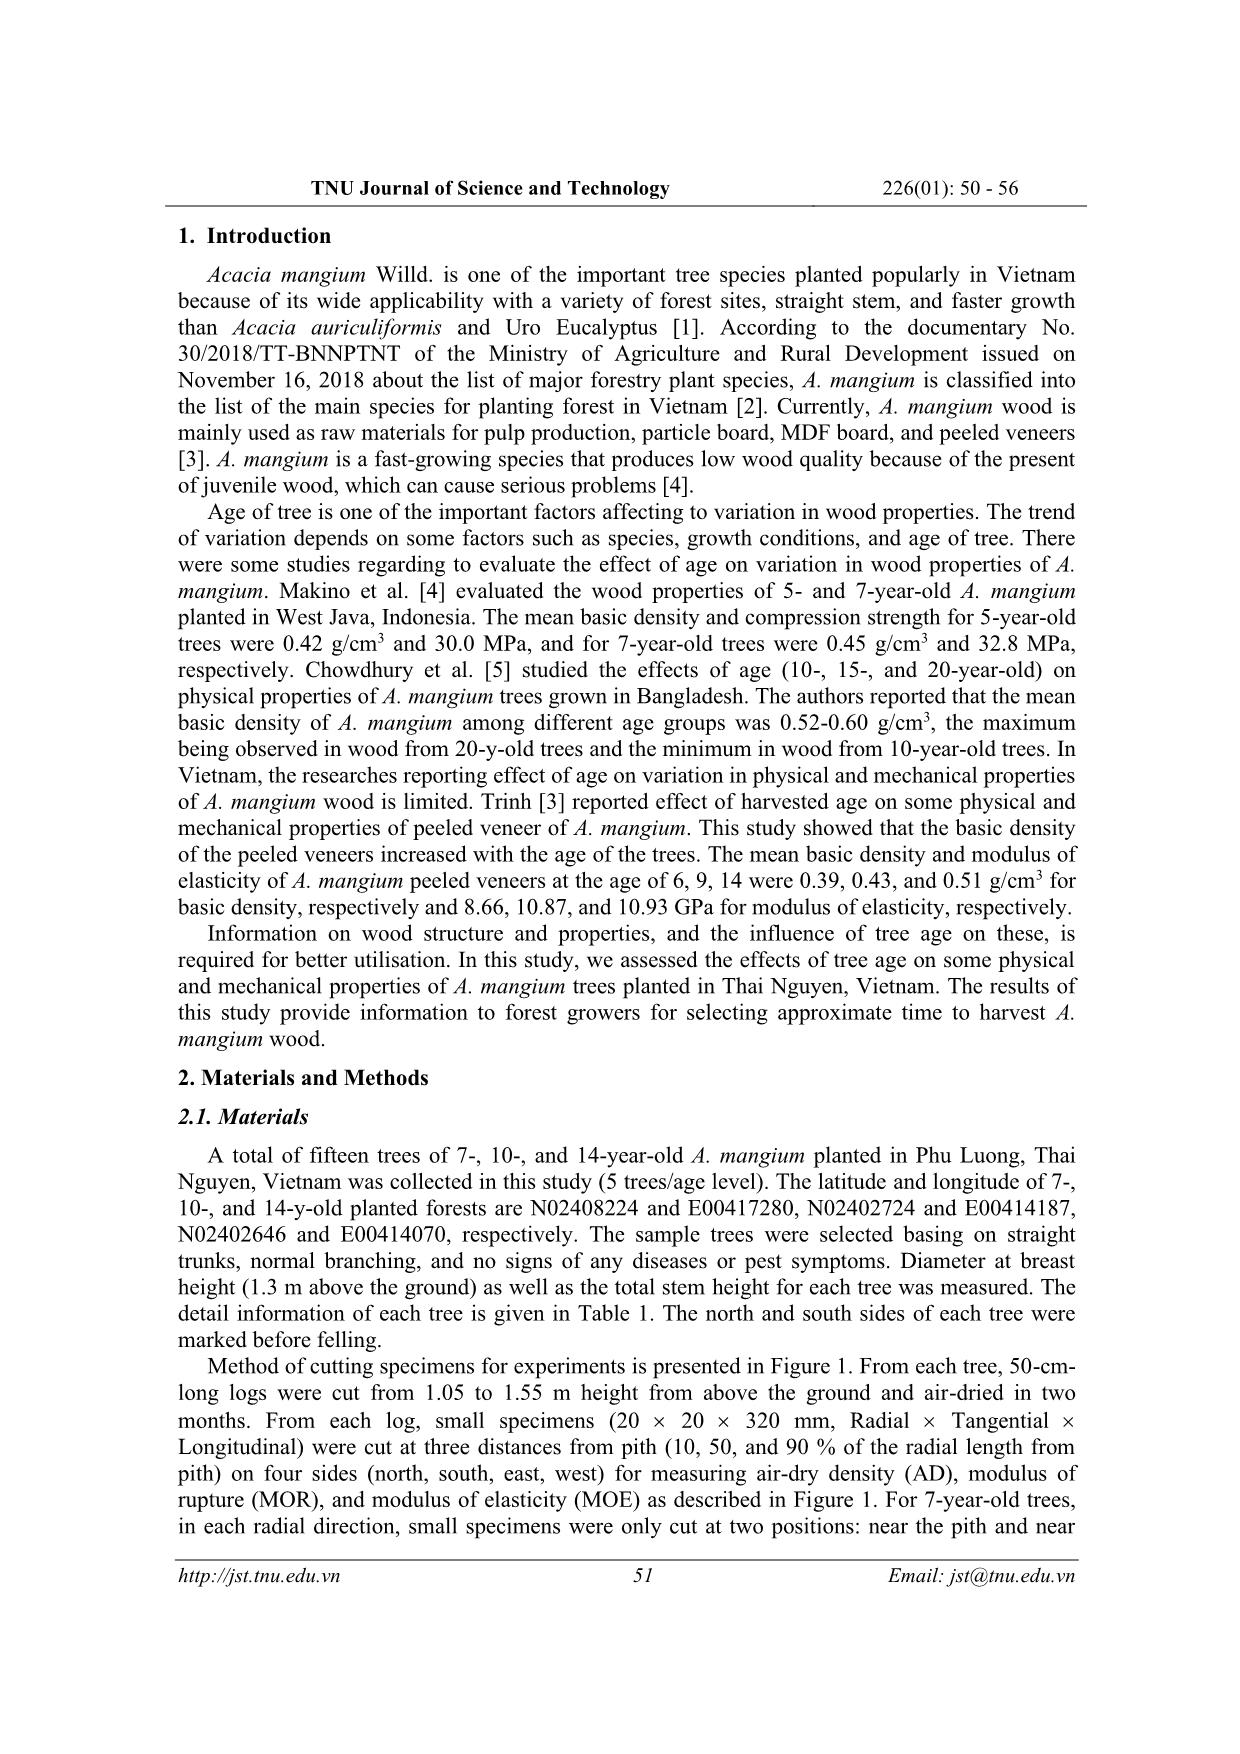 Ảnh hưởng của tuổi đến sự biến đổi các tính chất vật lý và cơ học của gỗ keo tai tượng (Acacia mangium) trồng tại Thái Nguyên trang 2